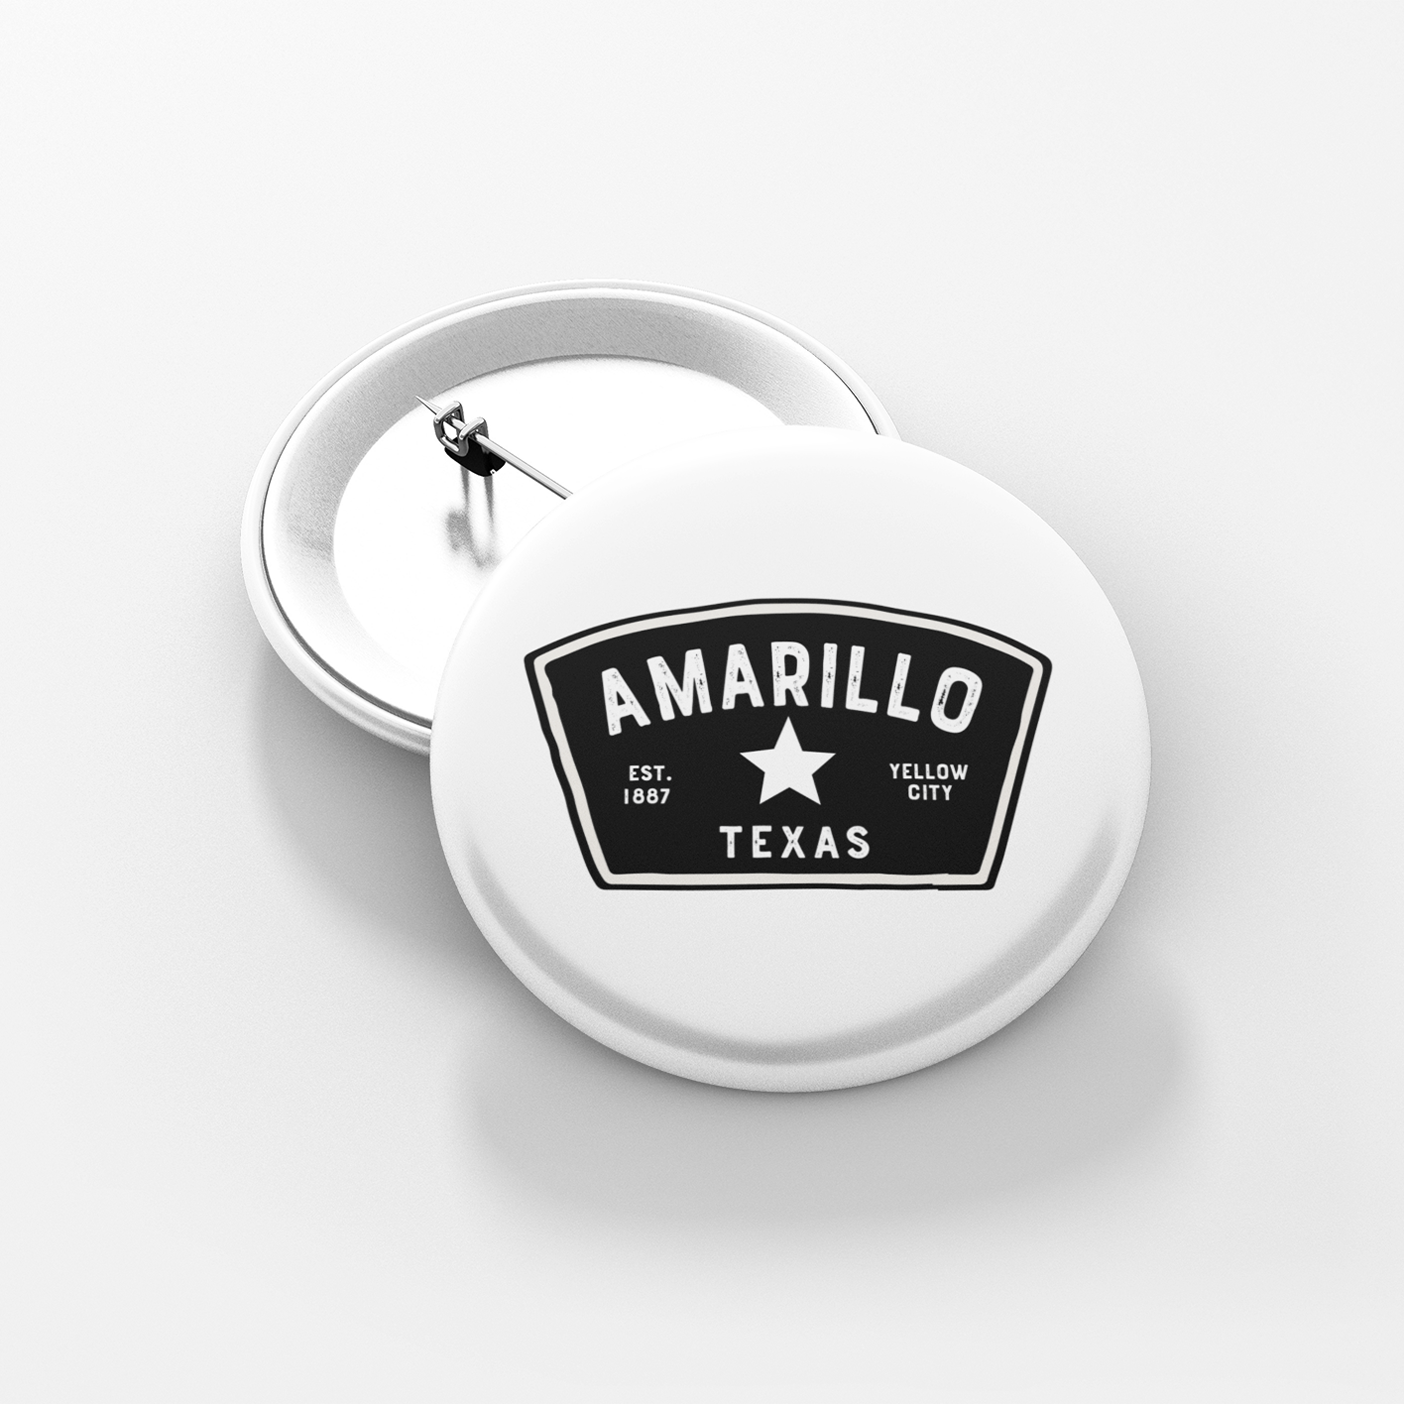 Amarillo Texas Button - Badge